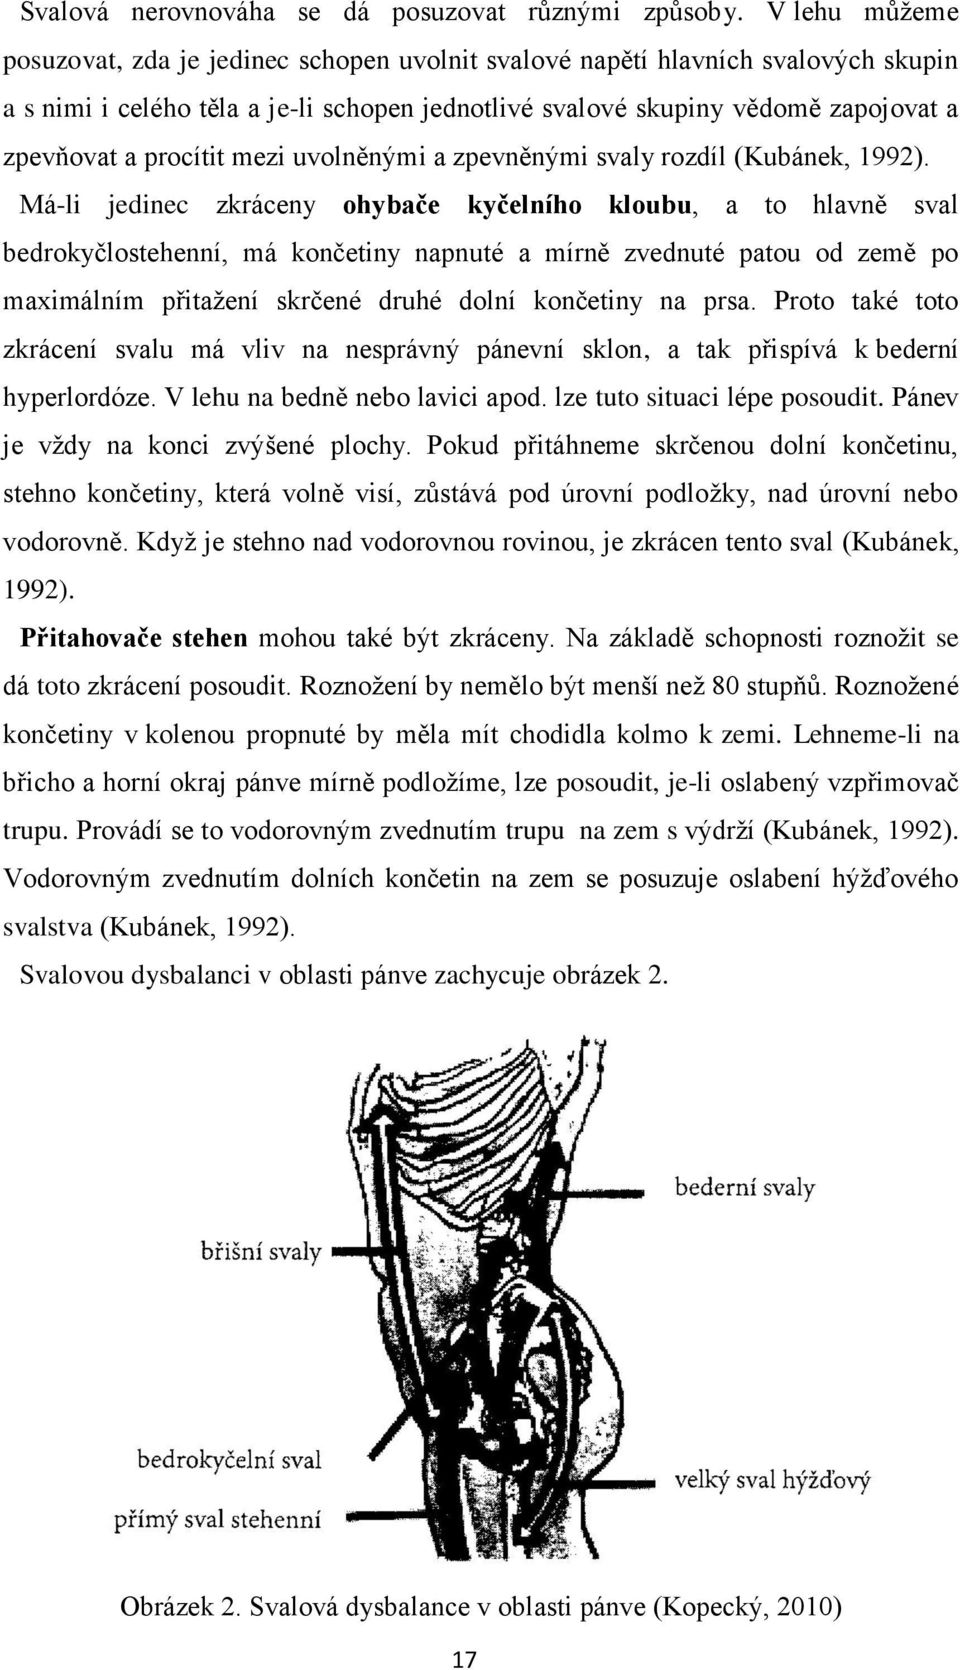 procítit mezi uvolněnými a zpevněnými svaly rozdíl (Kubánek, 1992).